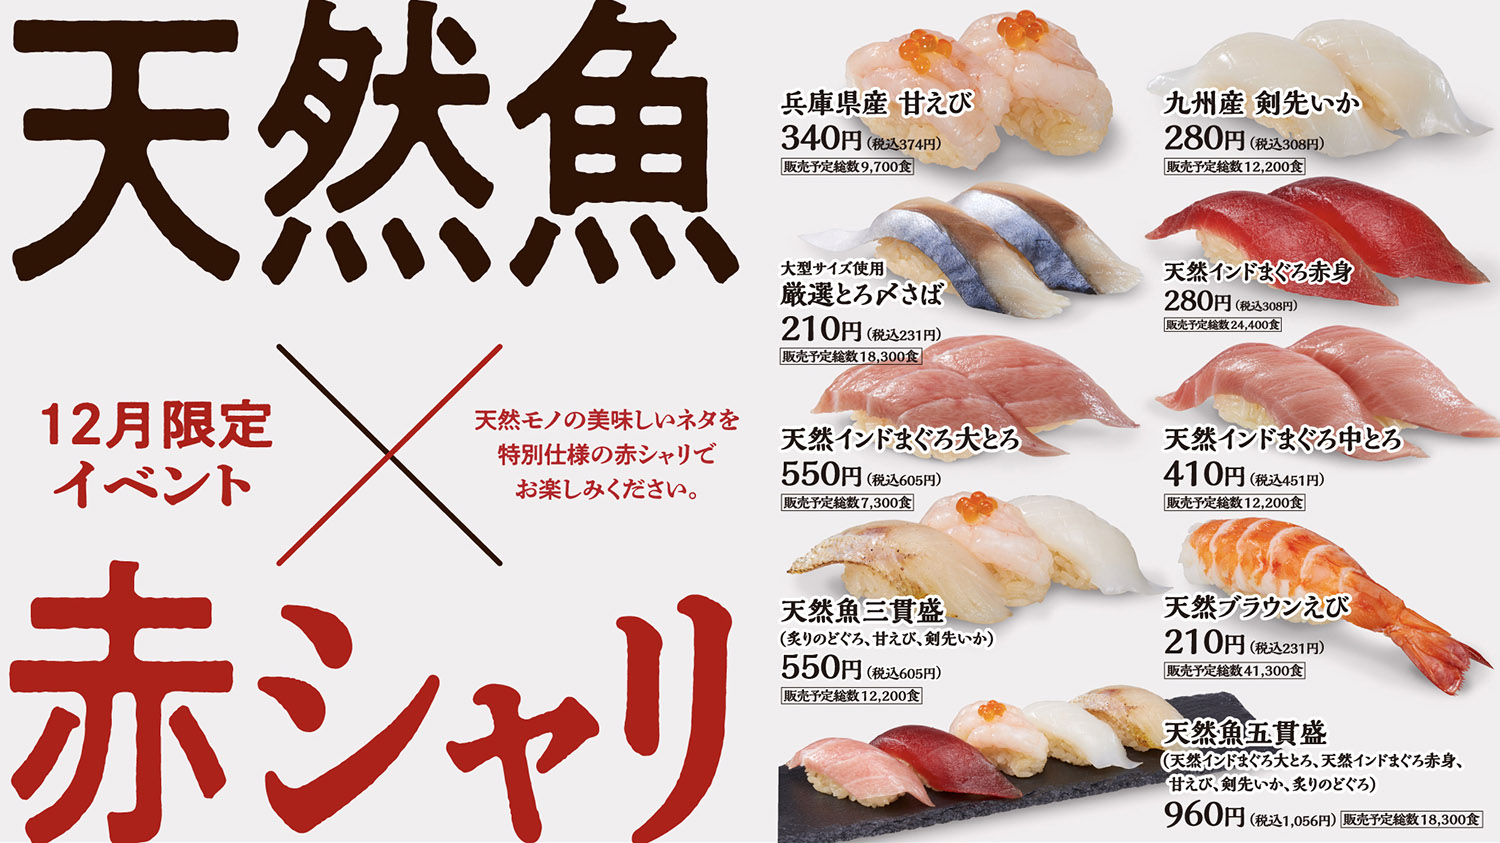 こだわりの天然魚の旨みと相性抜群! 赤酢をブレンドした江戸前寿司伝統の赤シャリが堪能できる「天然魚×赤シャリフェア」、回転寿司みさきが本日5日(月)から開催  ネタとぴ